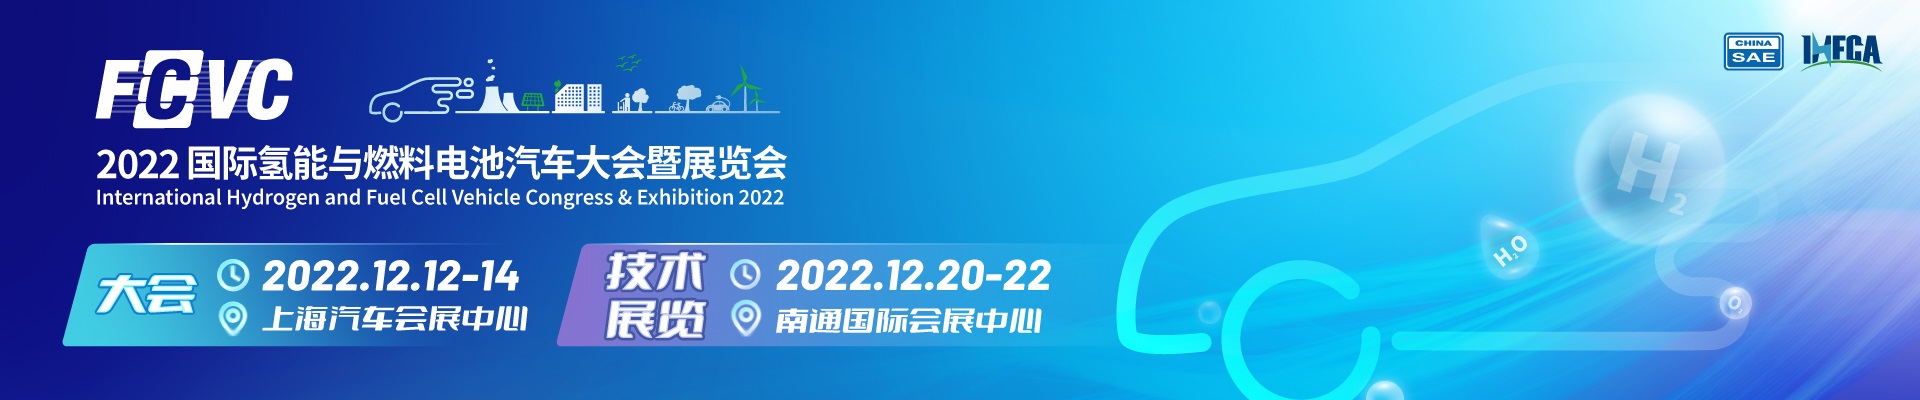 2022国际氢能与燃料电池汽车大会暨展览会